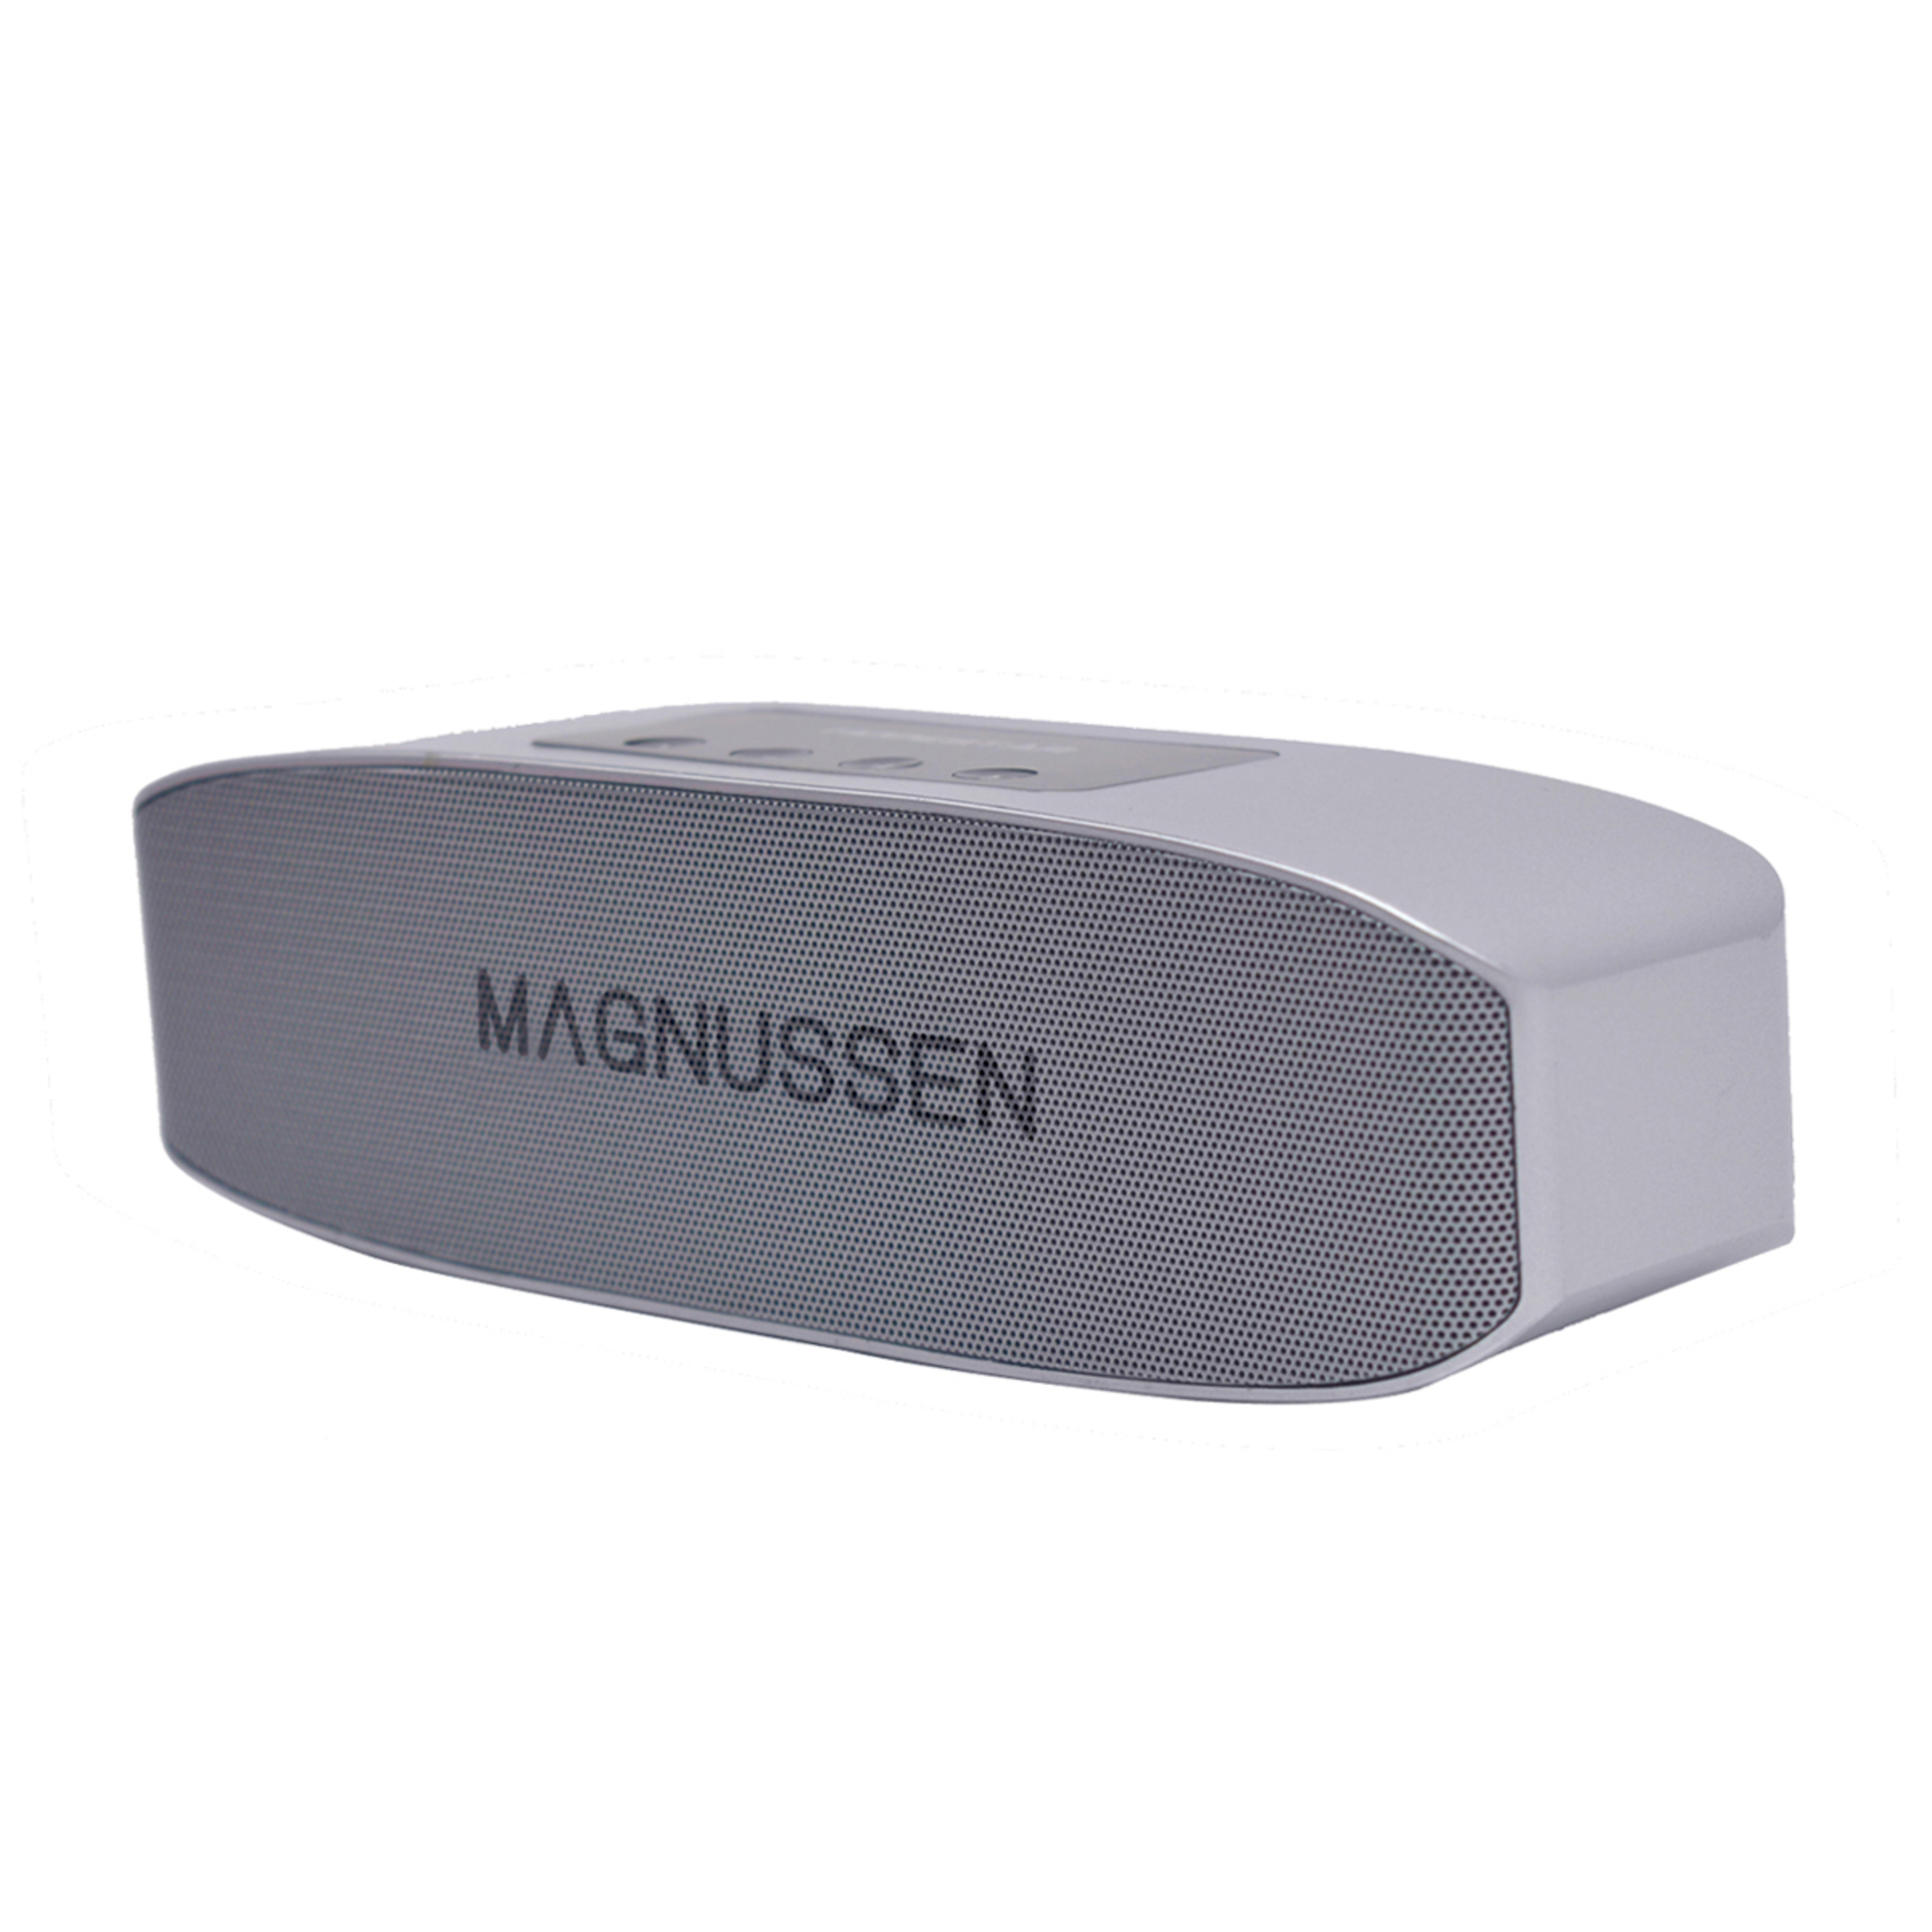 Altavoz Bluetooth Magnussen S3 - plateado - 